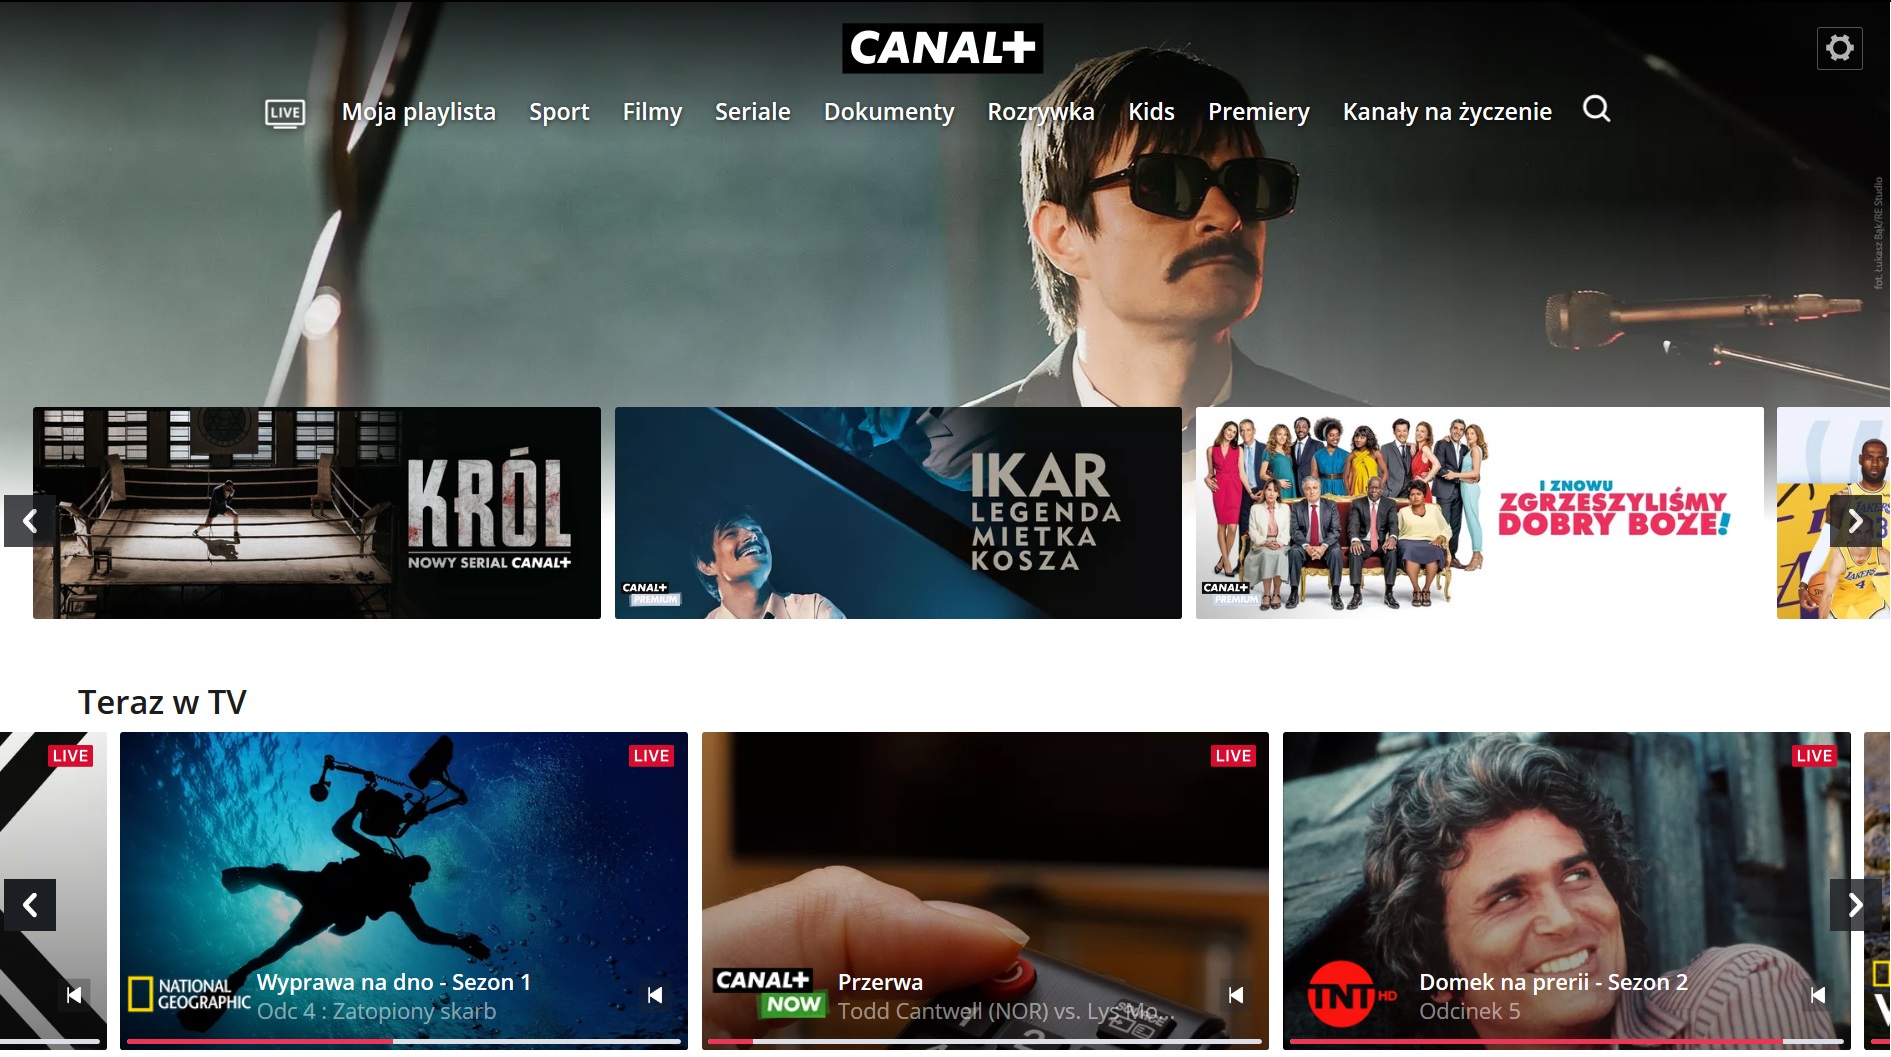 CANAL+ telewizja przez internet